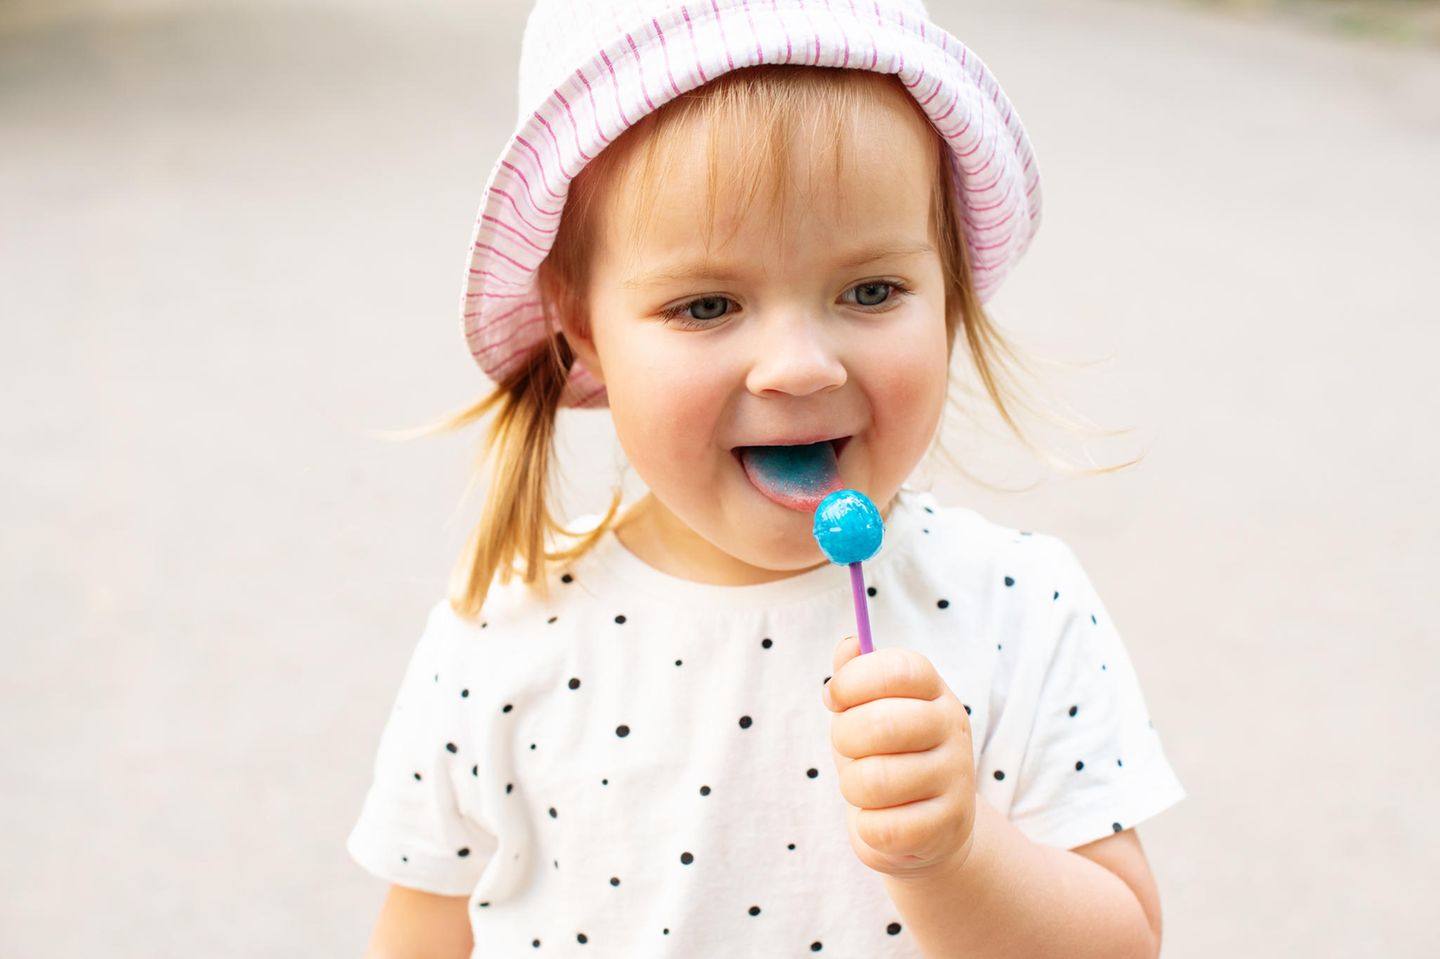 Auf süß geprägt: Ein kleines Mädchen leckt an einem blauen Lolli